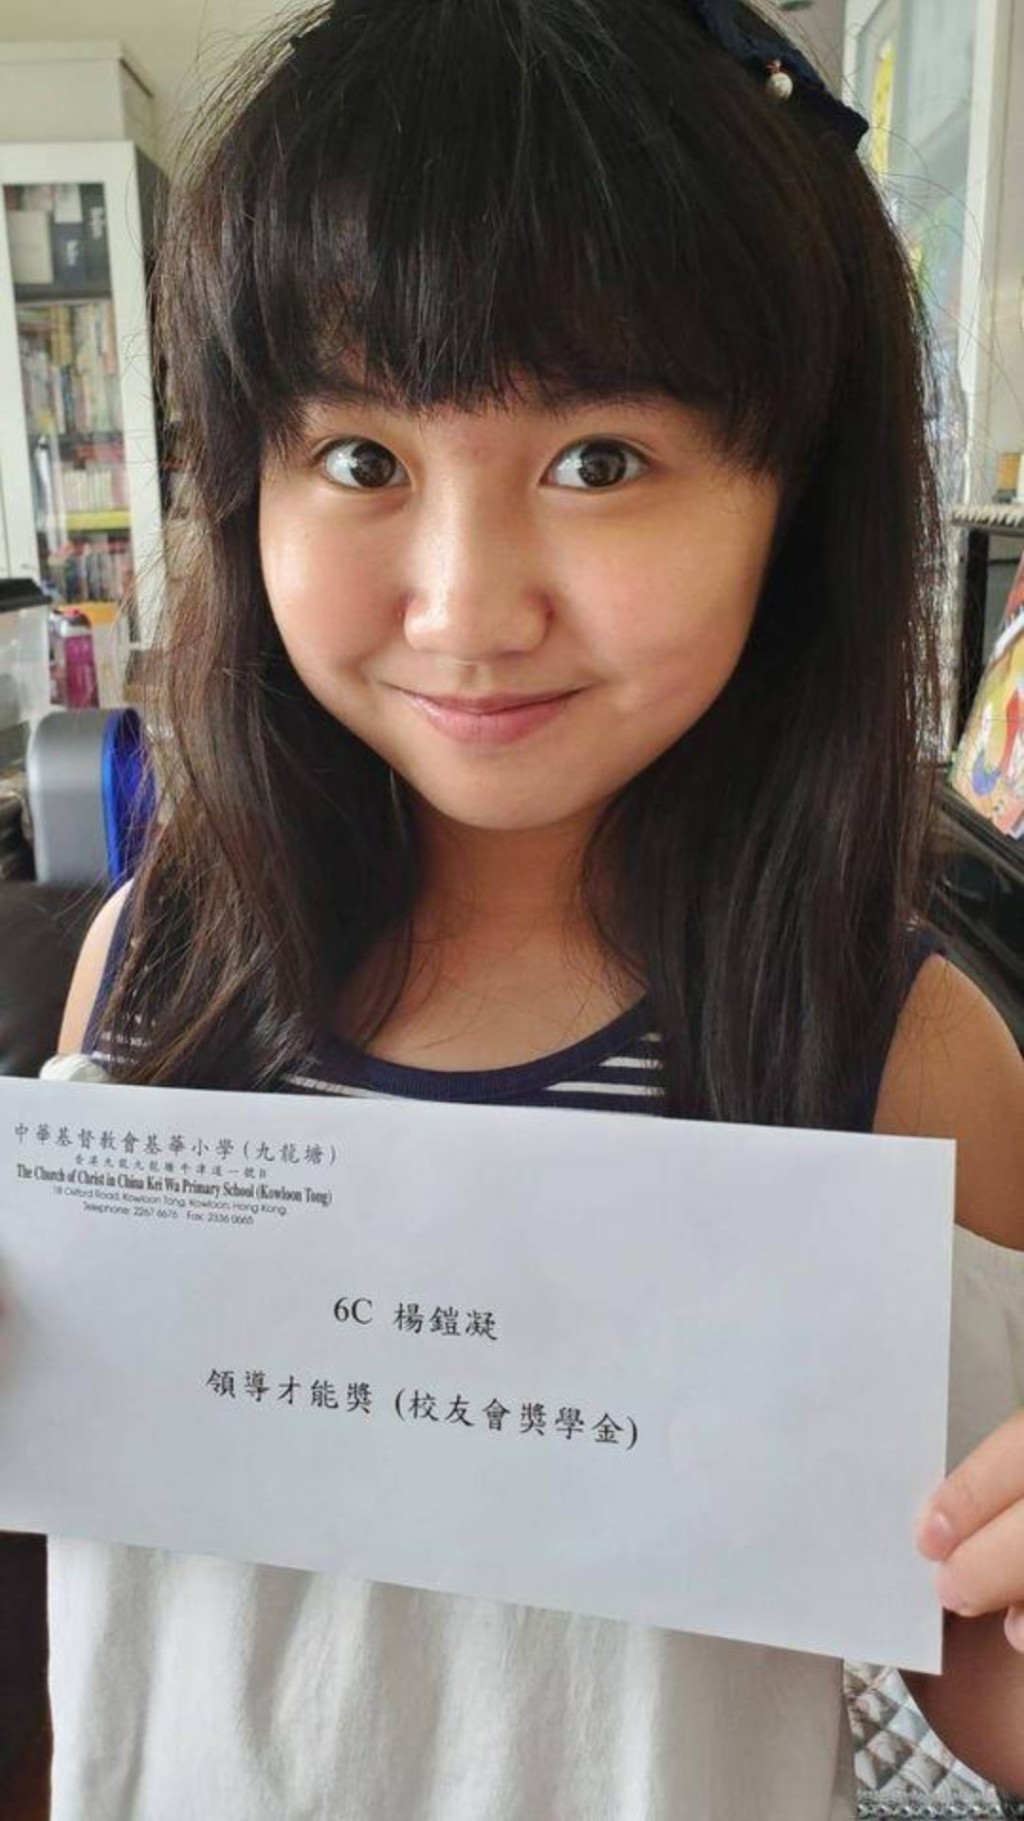 童星Celine杨铠凝近年活跃于社交平台。